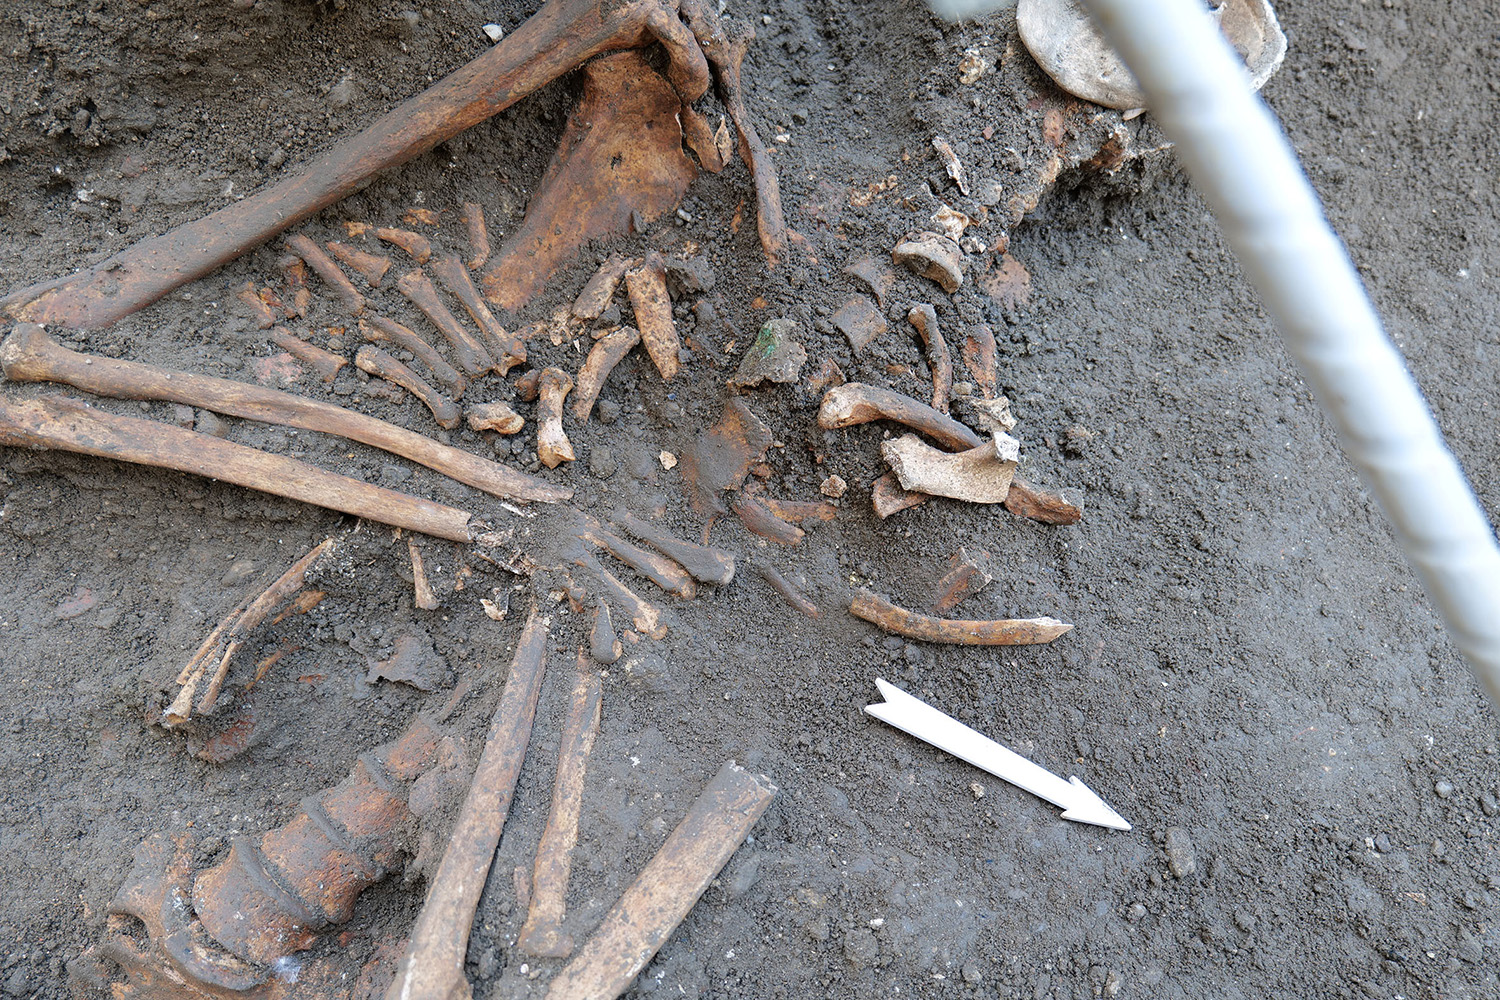 Während einer Ausgrabung fotografierte Knochen eines Skeletts, teilweise noch nicht ganz freigelegt sondern in der Erde